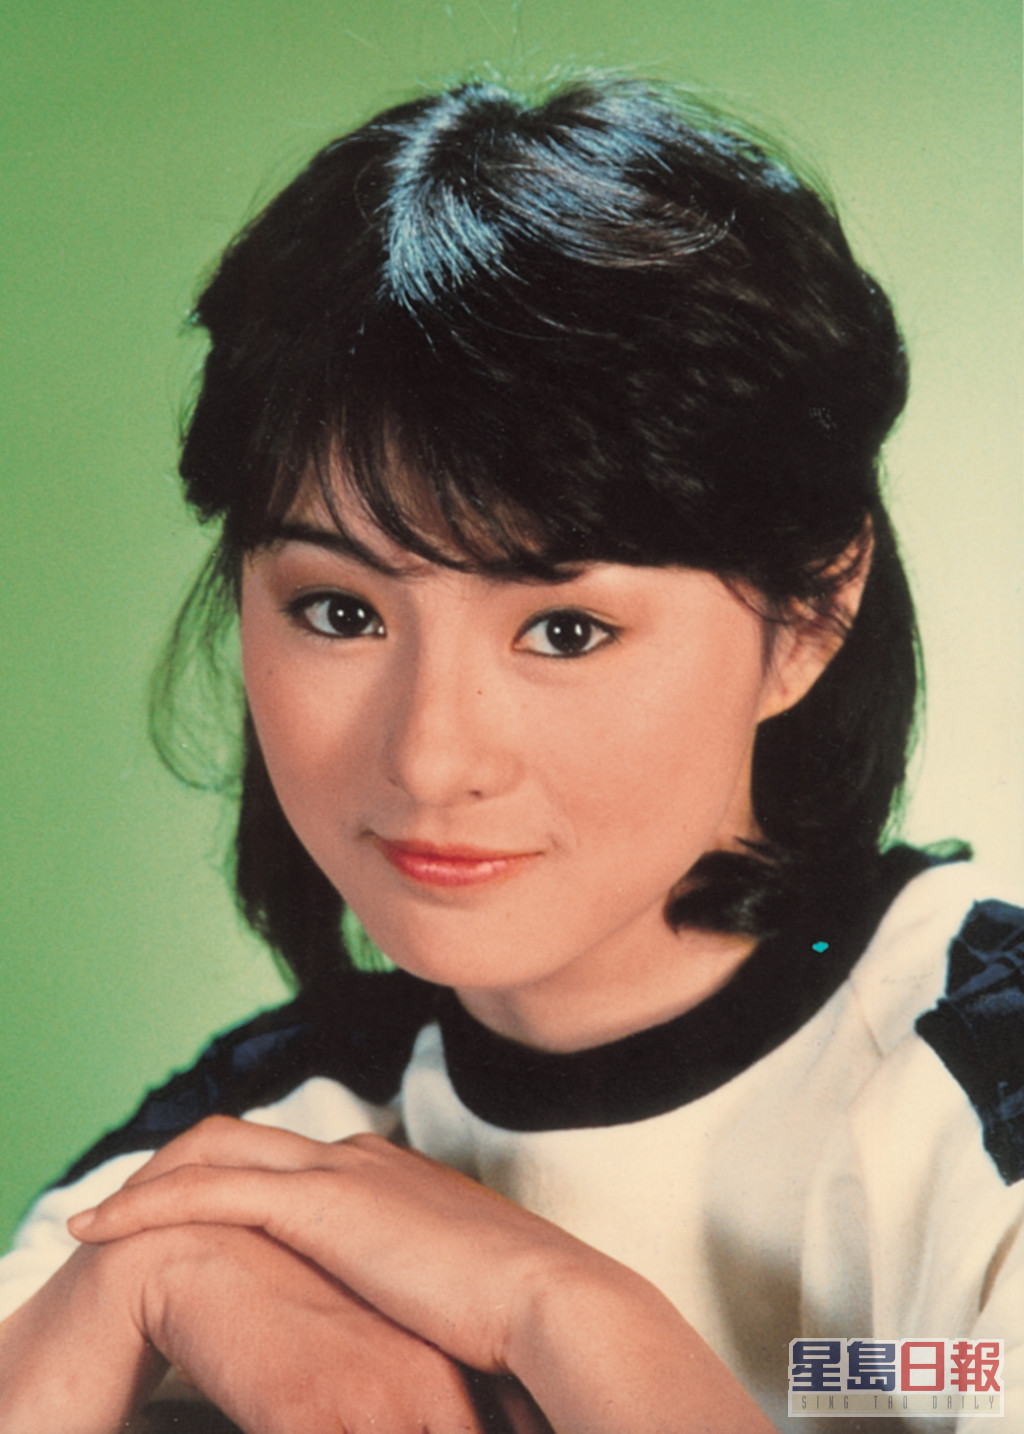 1984年，李赛凤既拍电视又拍电影双线发展，而外表纯真可爱的她，多演出主角小妹妹的角色。